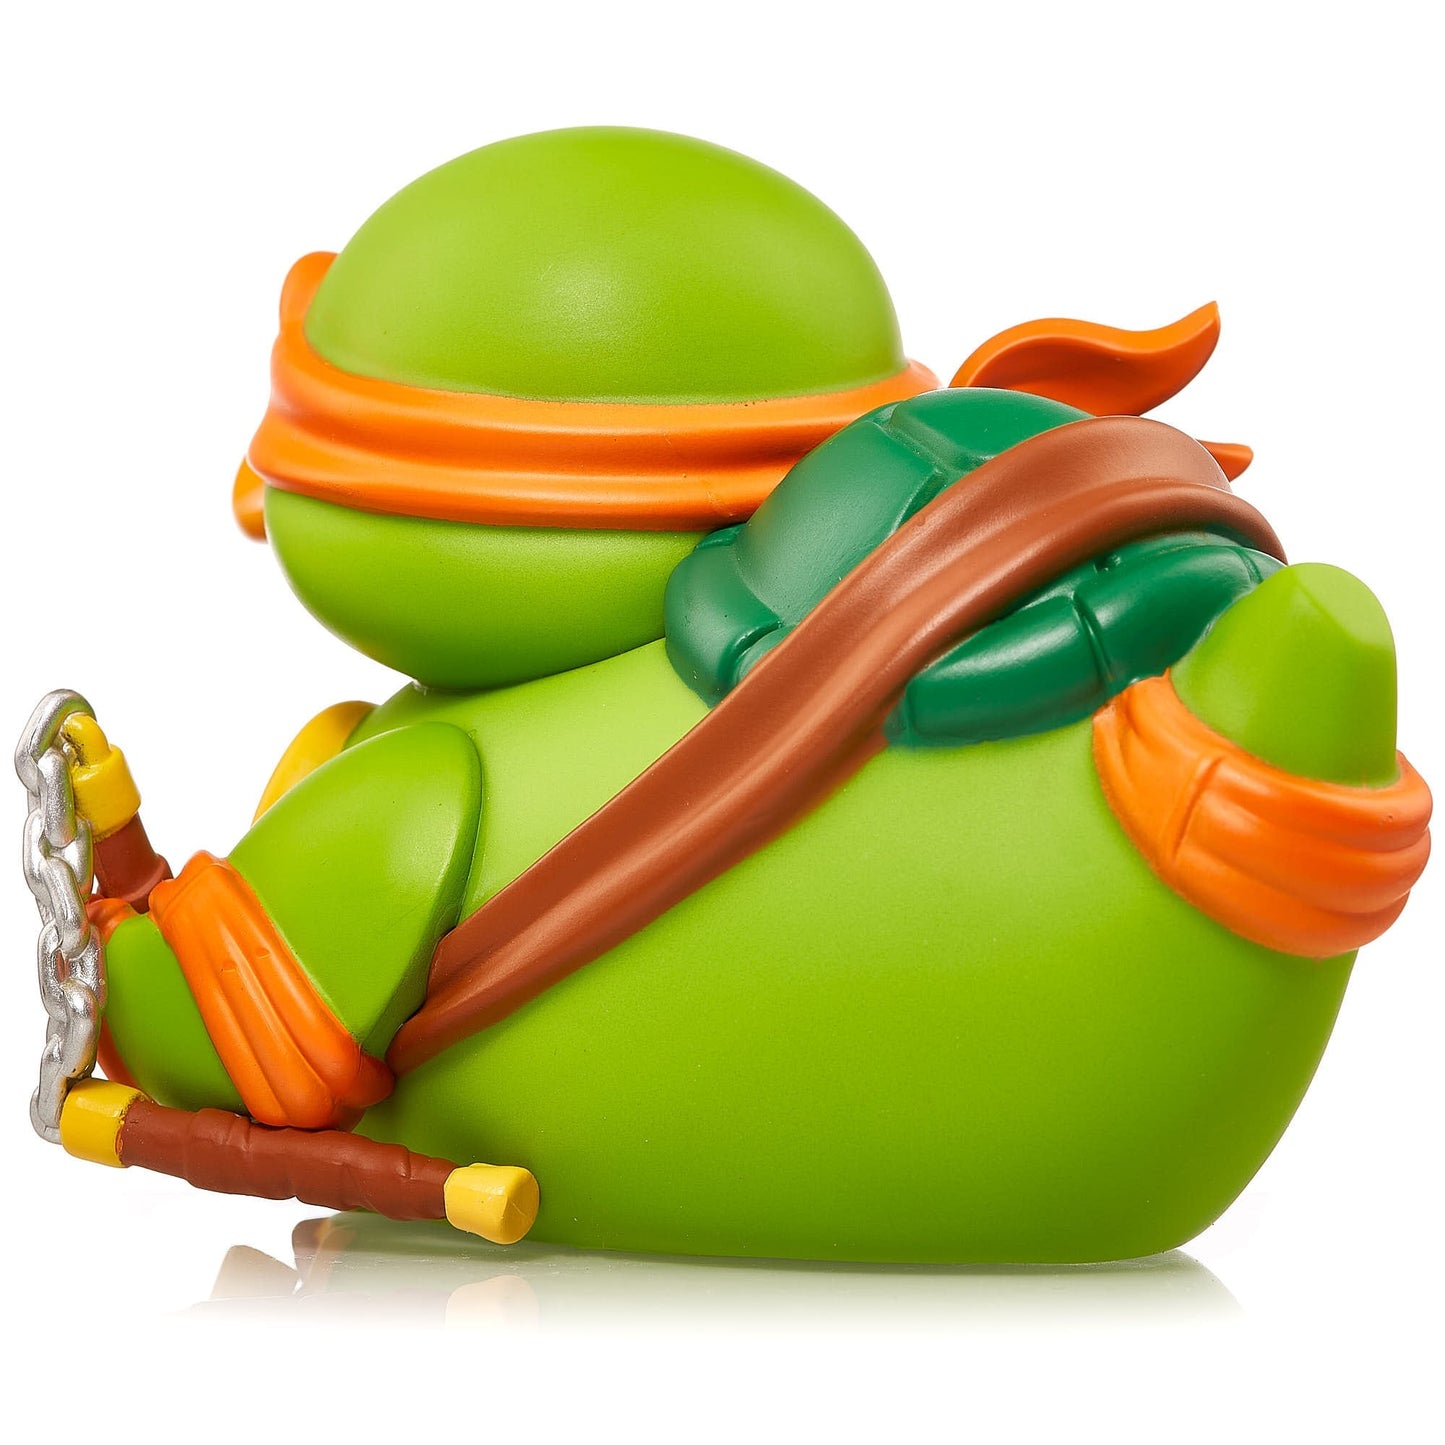 Michelangelo duck